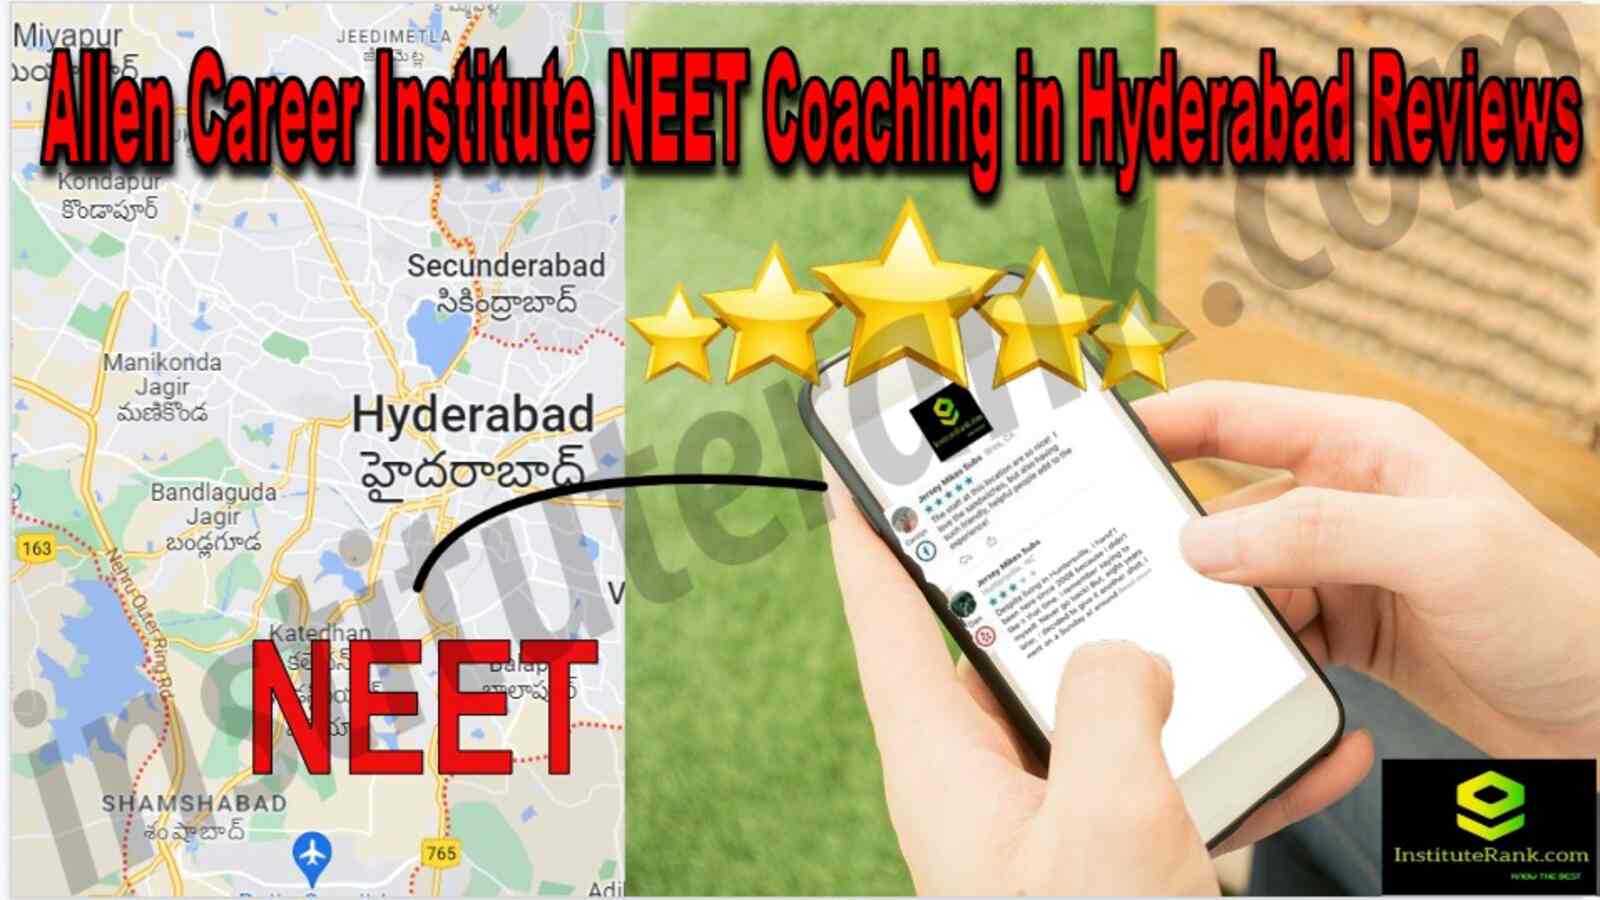 Allen Career Institute NEET Coaching in Hyderabad Reviews